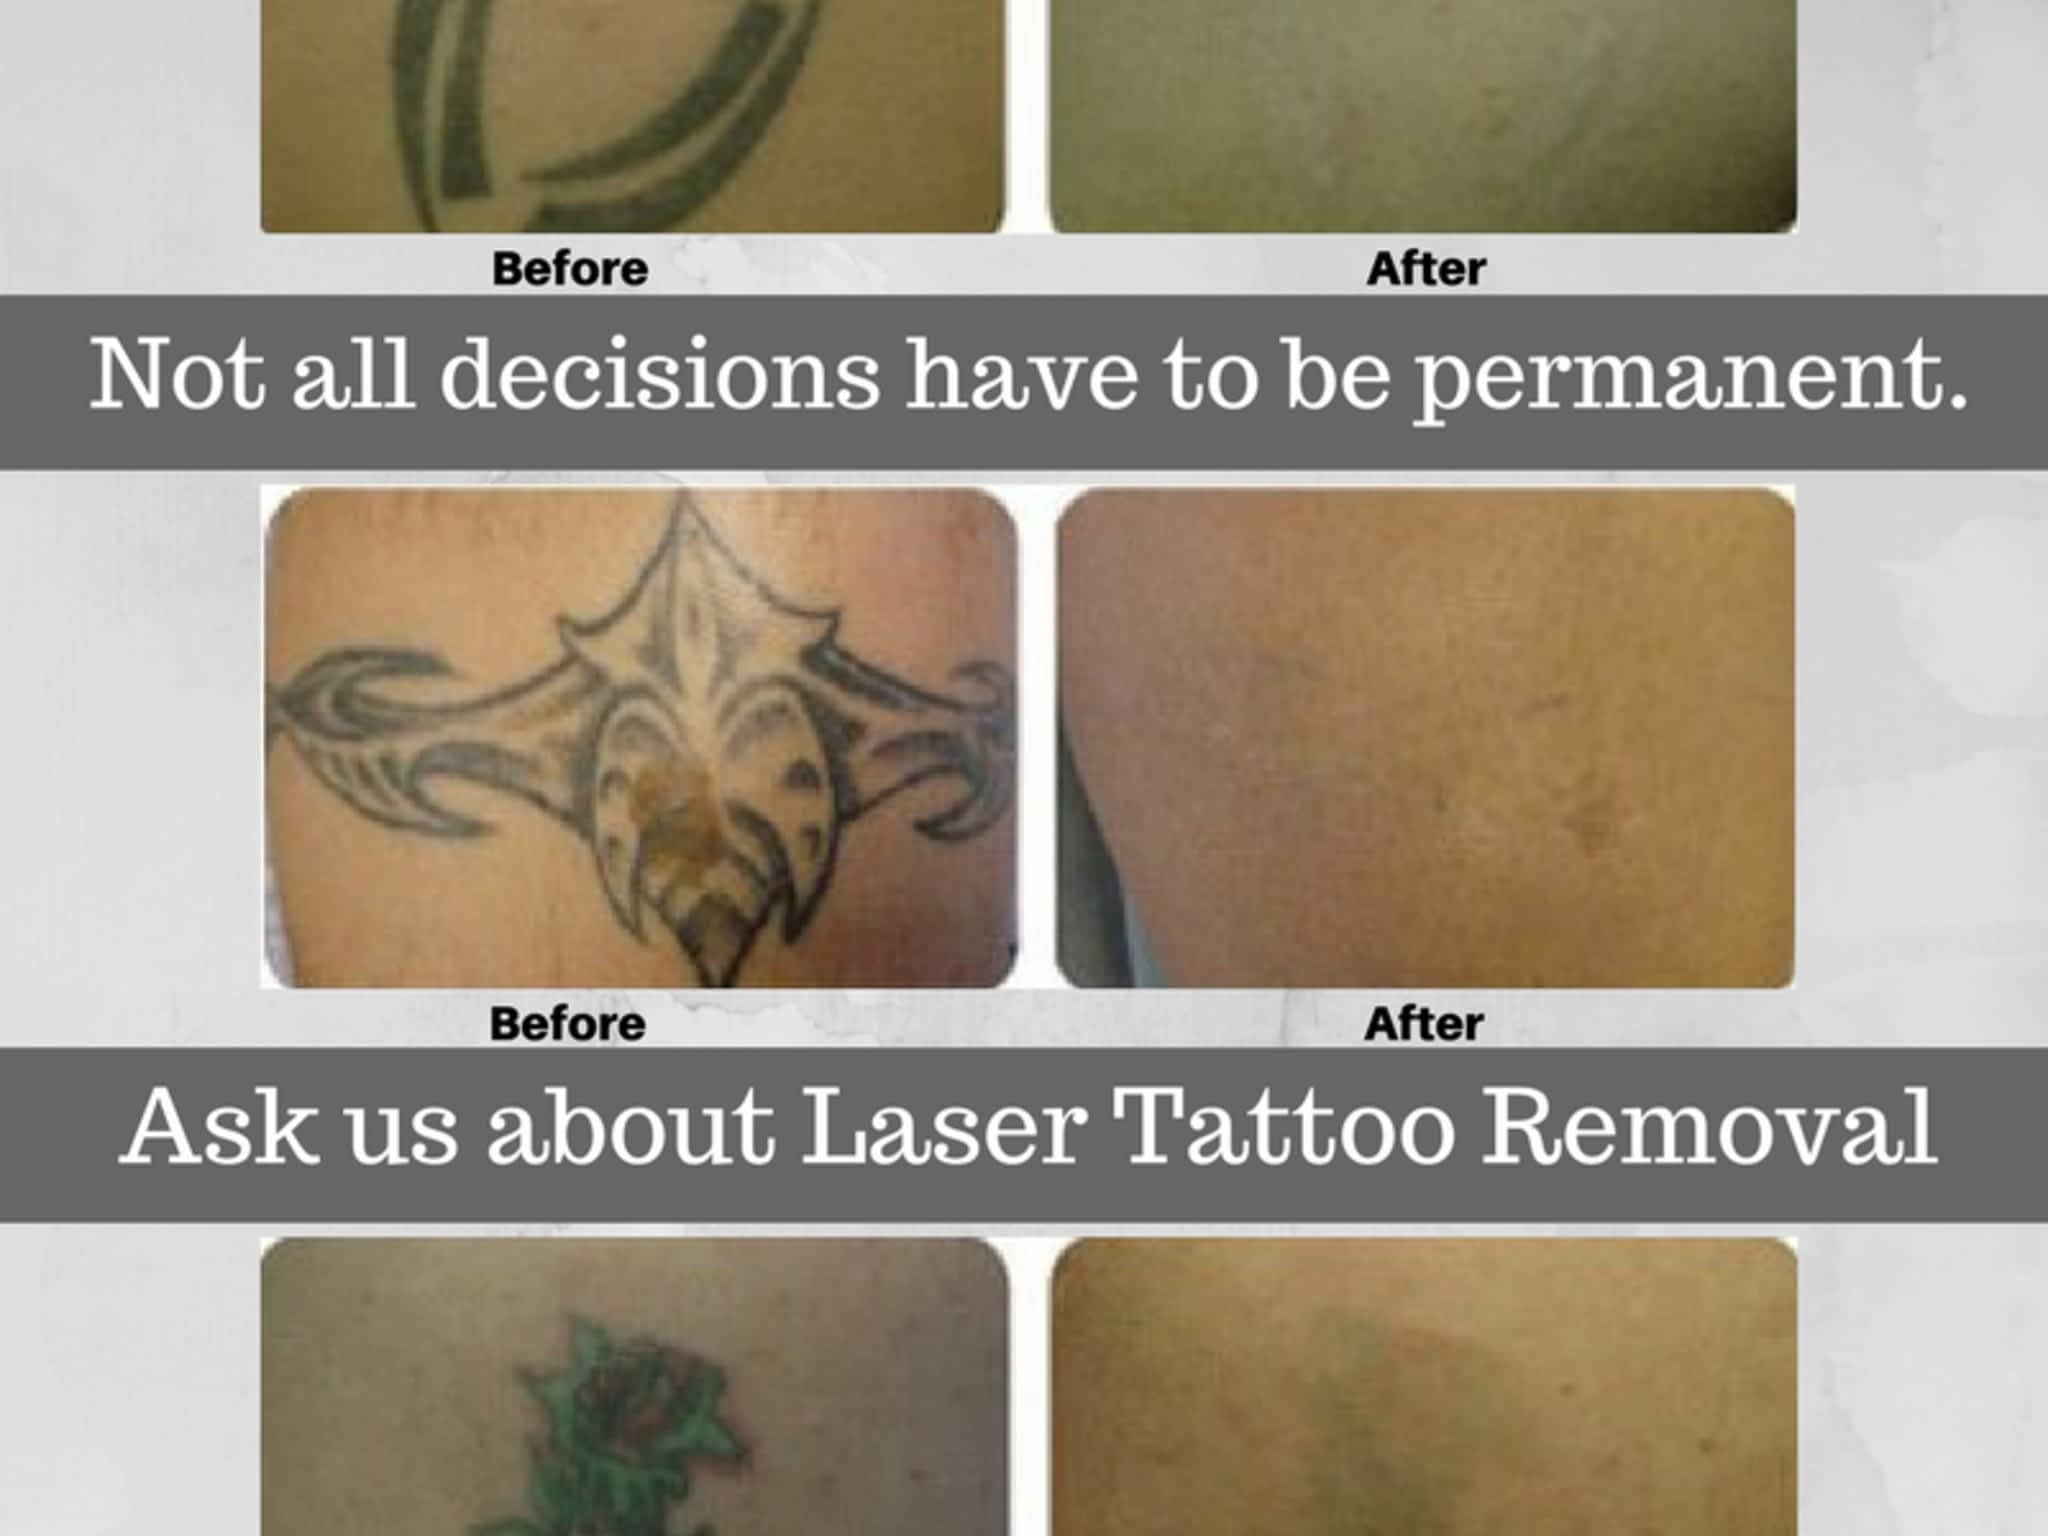 photo Laser & Skin Care Medspa Red Deer Ltd